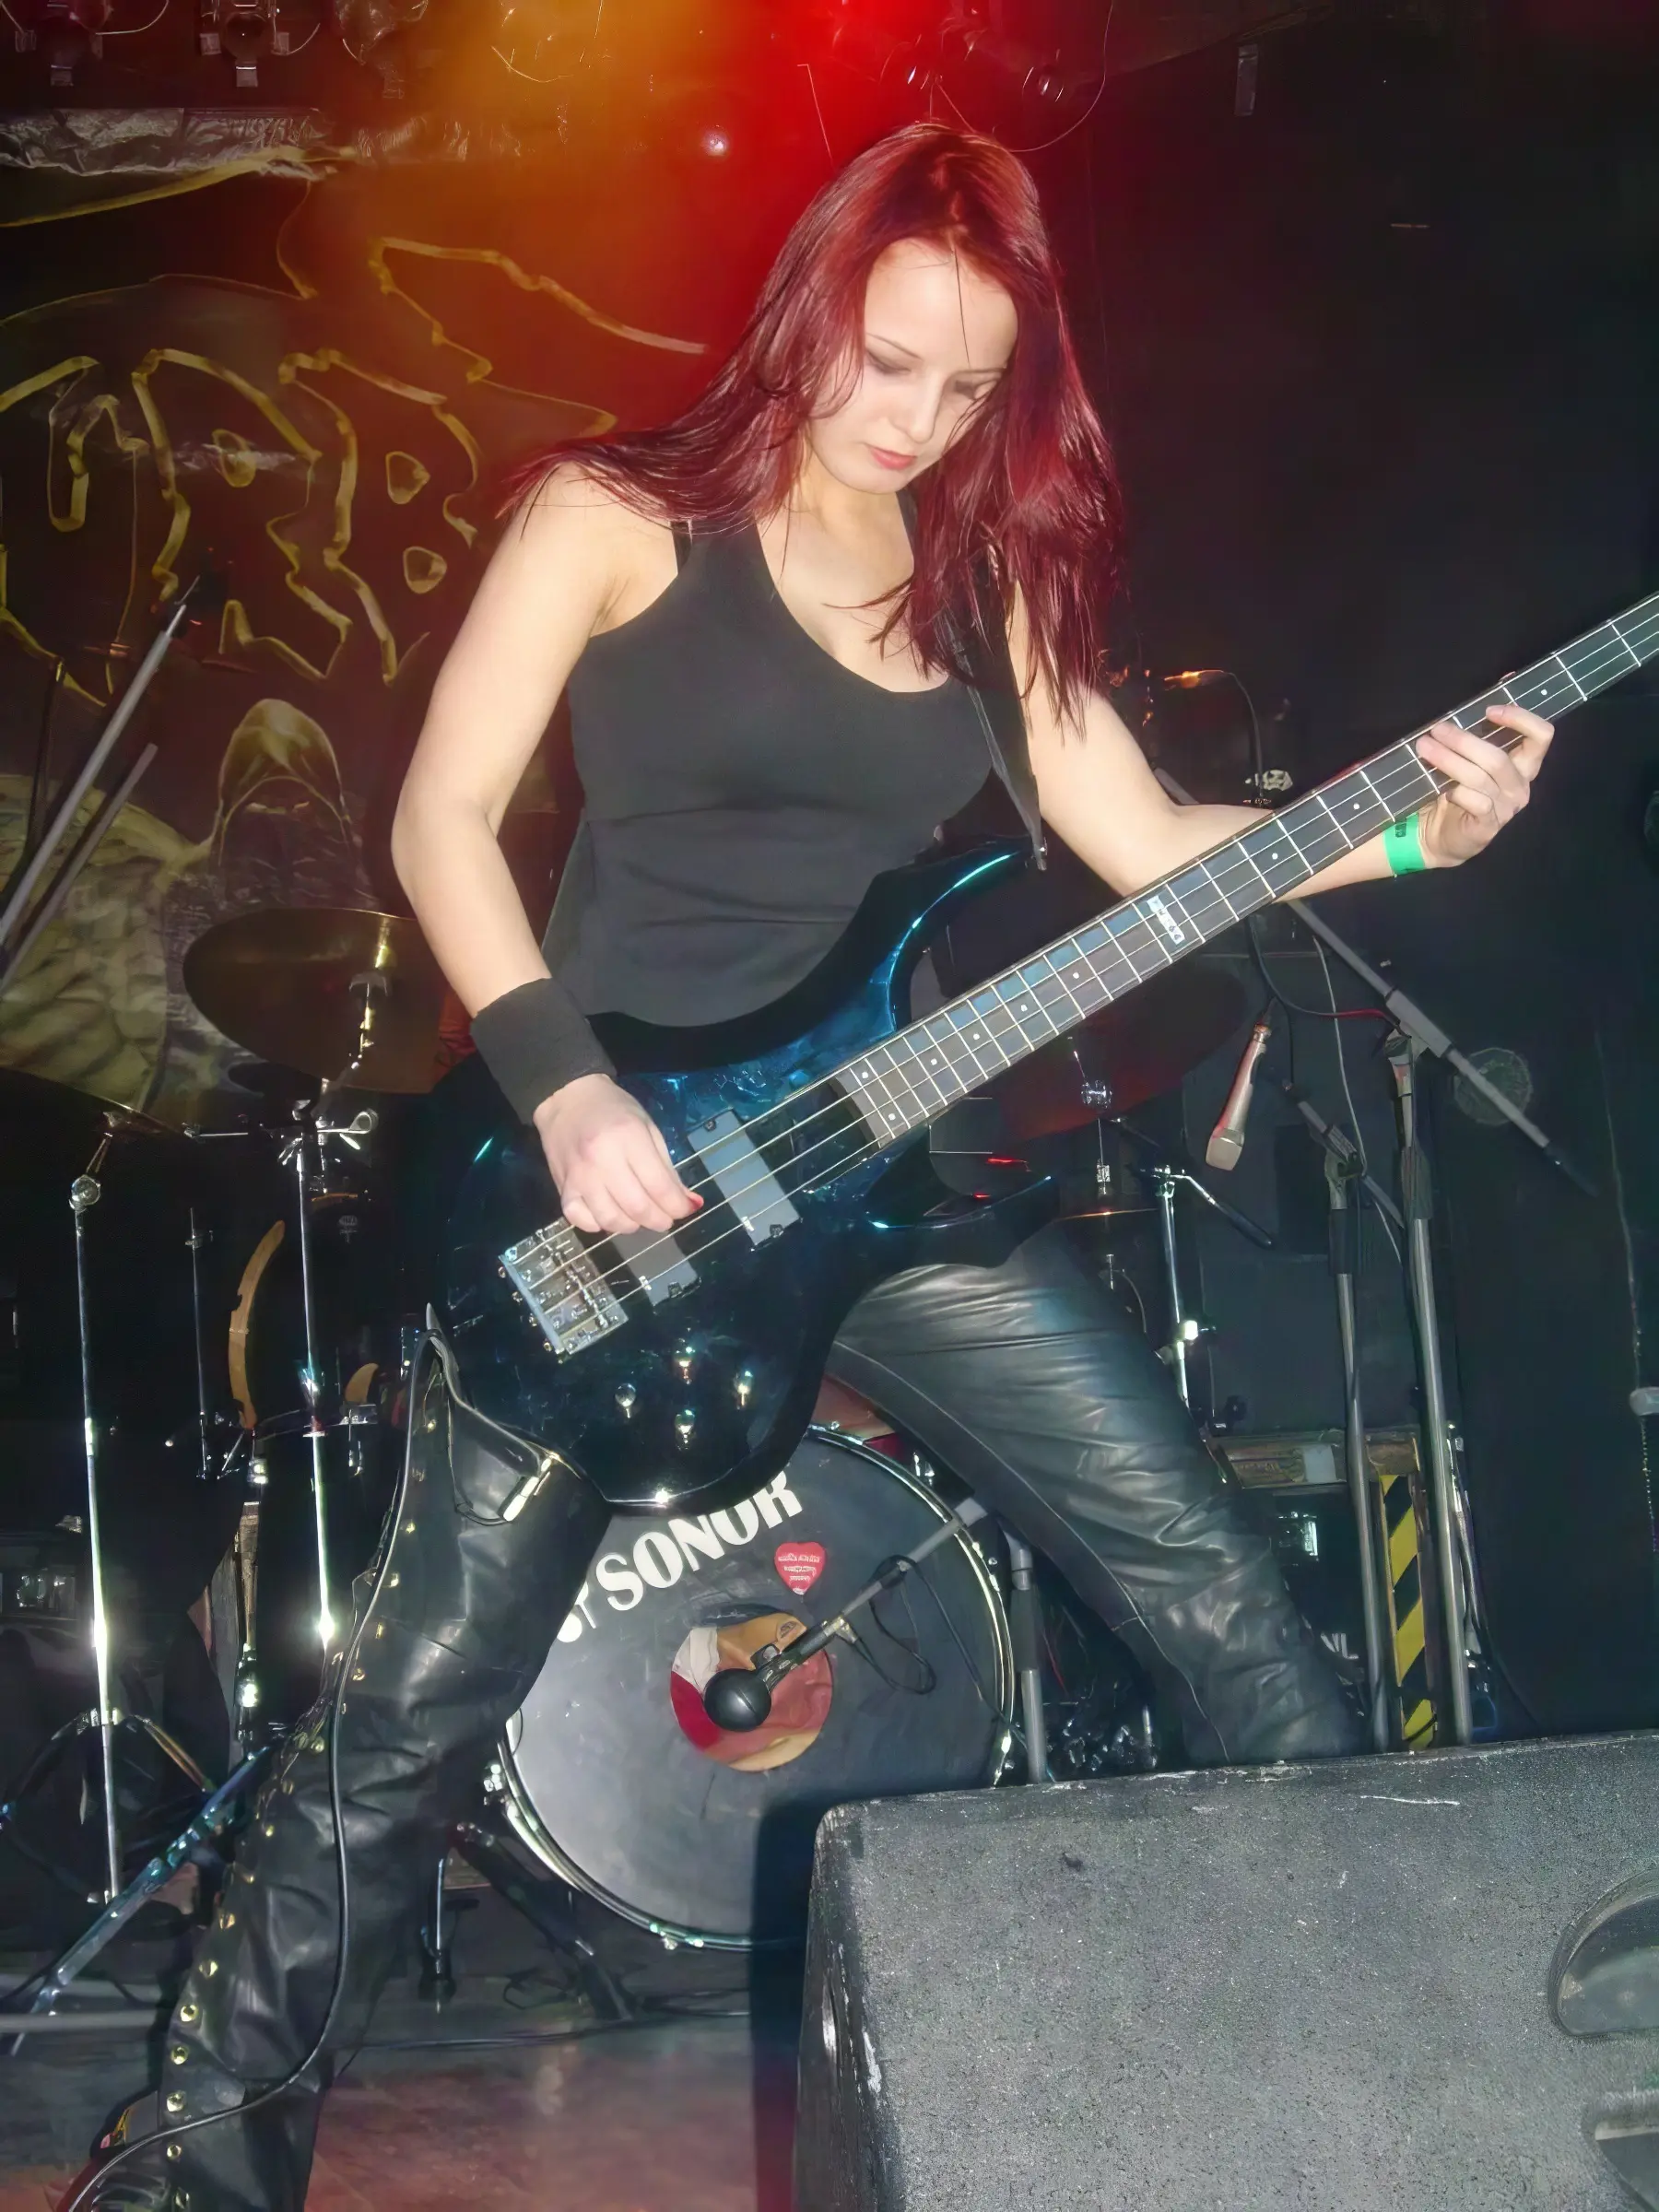 basistka słowackiego zespołu Ravenclav koncertującego w Krakowie w Walentynki 2010 osoby tonka von killraven